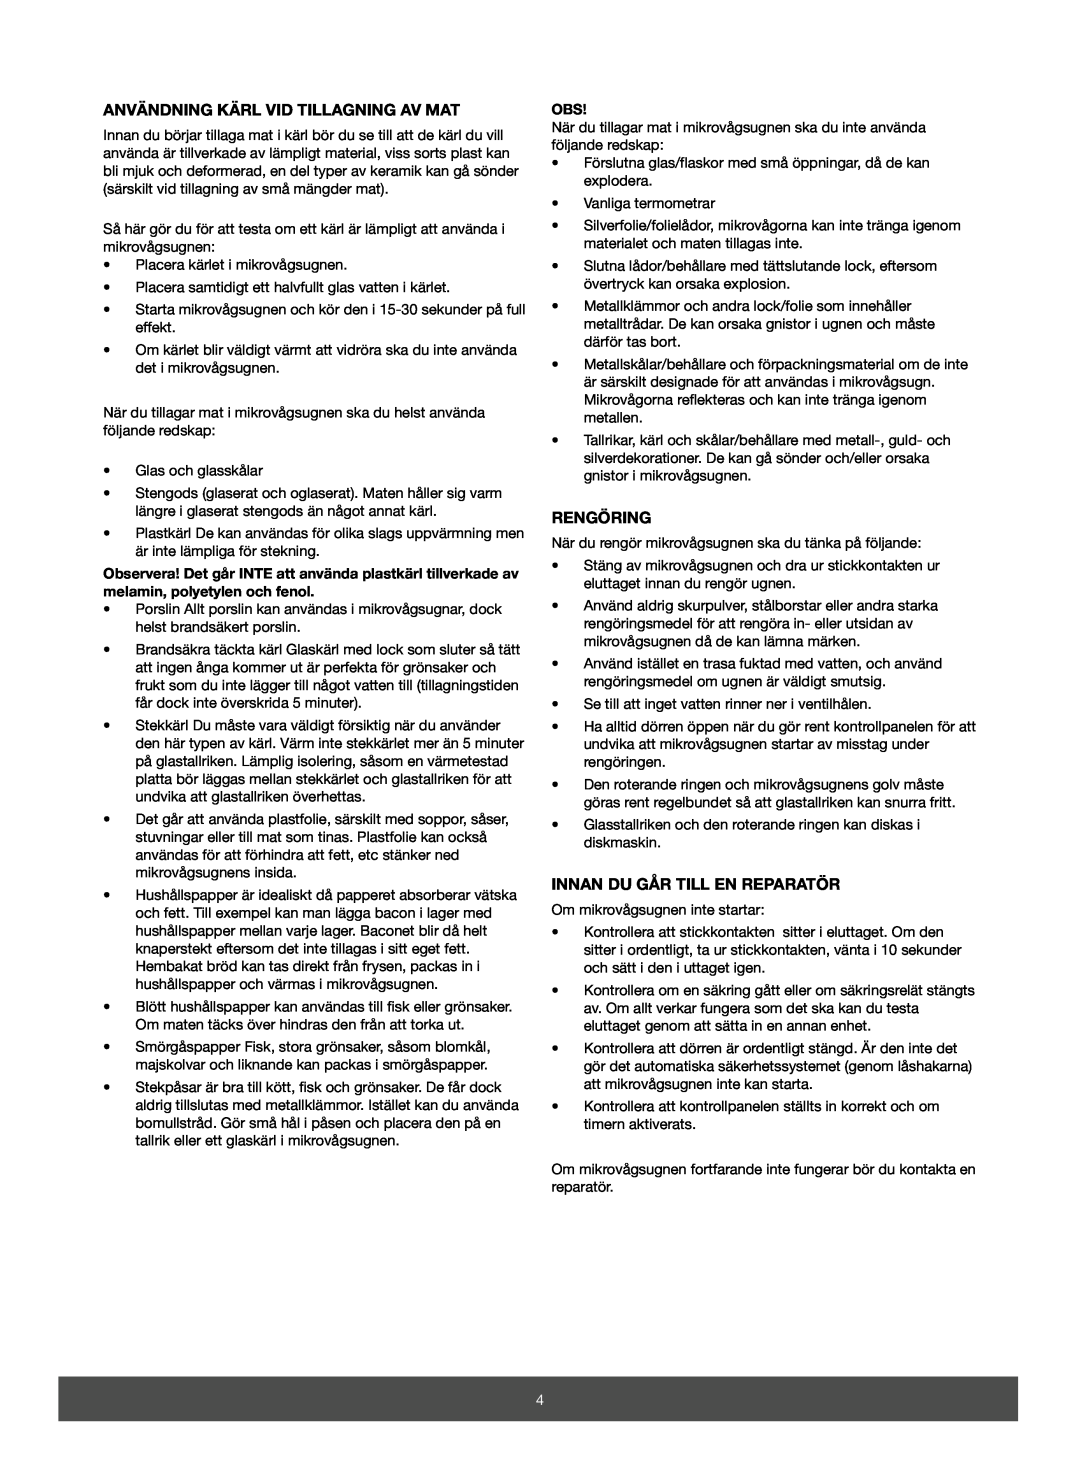 Melissa 653-067/068 manual Användning Kärl Vid Tillagning Av Mat, Rengöring, Innan Du Går Till En Reparatör 